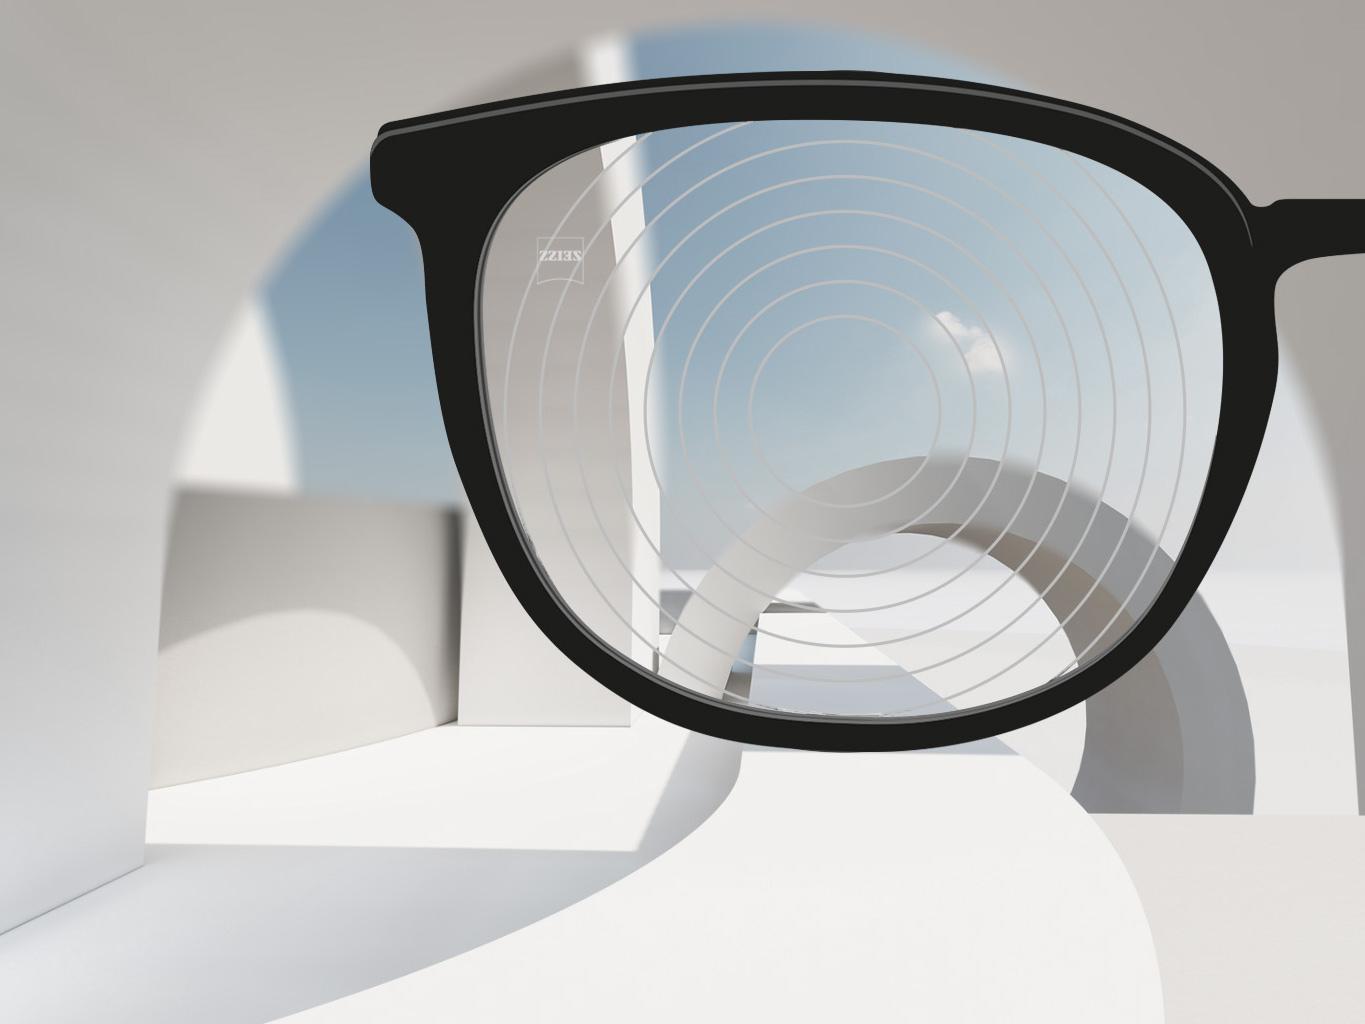 En närbild av glas för myopihantering från ZEISS, med svarta glasögonbågar och koncentriska cirklar på glasytan. 